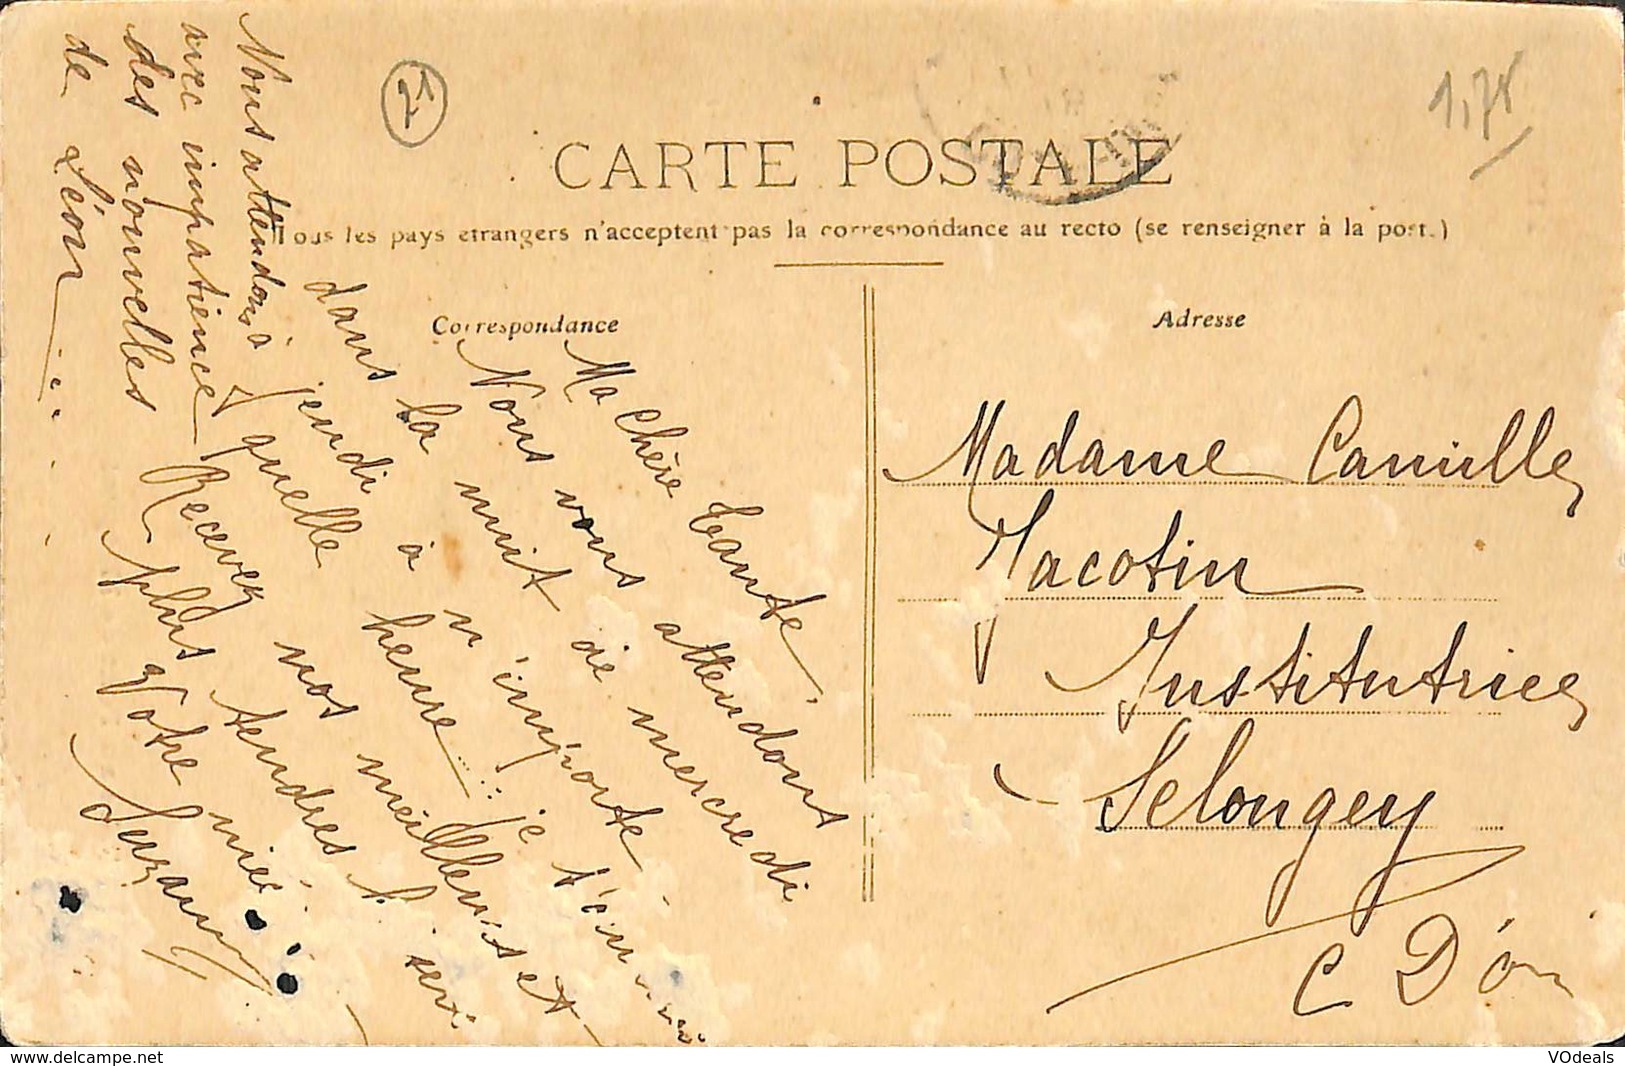 030 925 - CPA - France (21)  Côte d'Or - Dijon - lot de 5 cartes